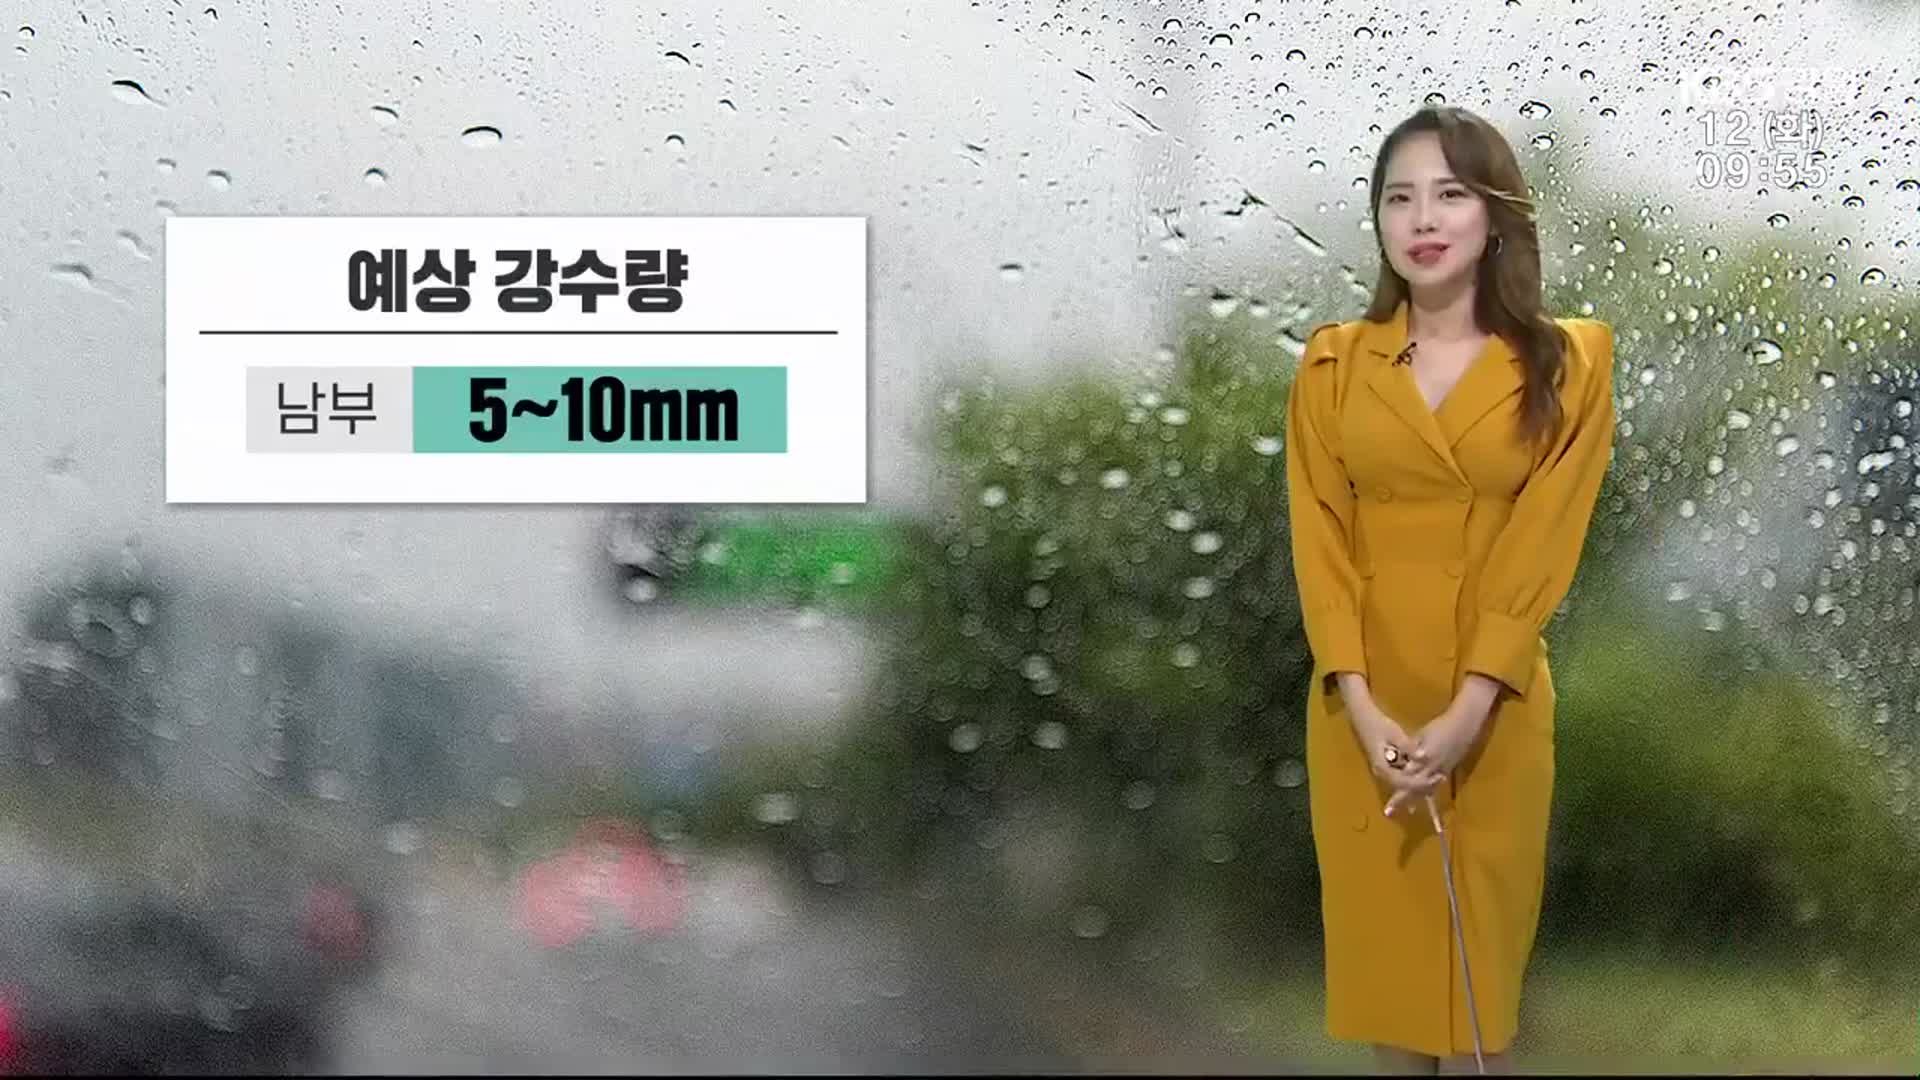 [날씨] 강원 남부지역 우산 챙기세요!…예상강수량 5~10mm